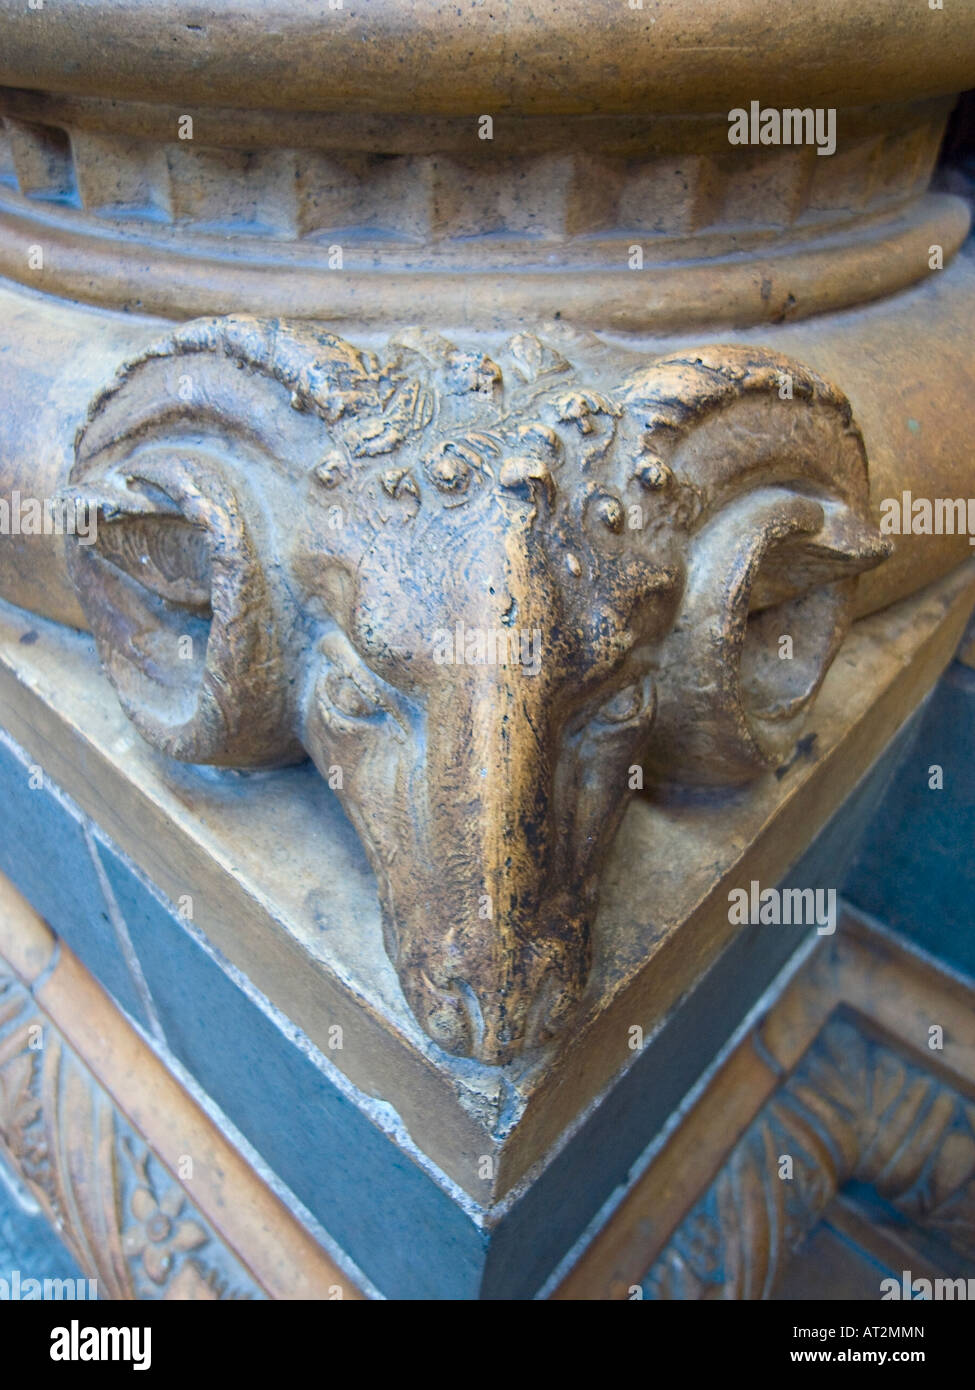 Tête De Ram sculptée au bleu de cobalt et en terre cuite à la base de la colonne de Central Hall, Waterhouse Building, Natural History Museum, Londres Banque D'Images